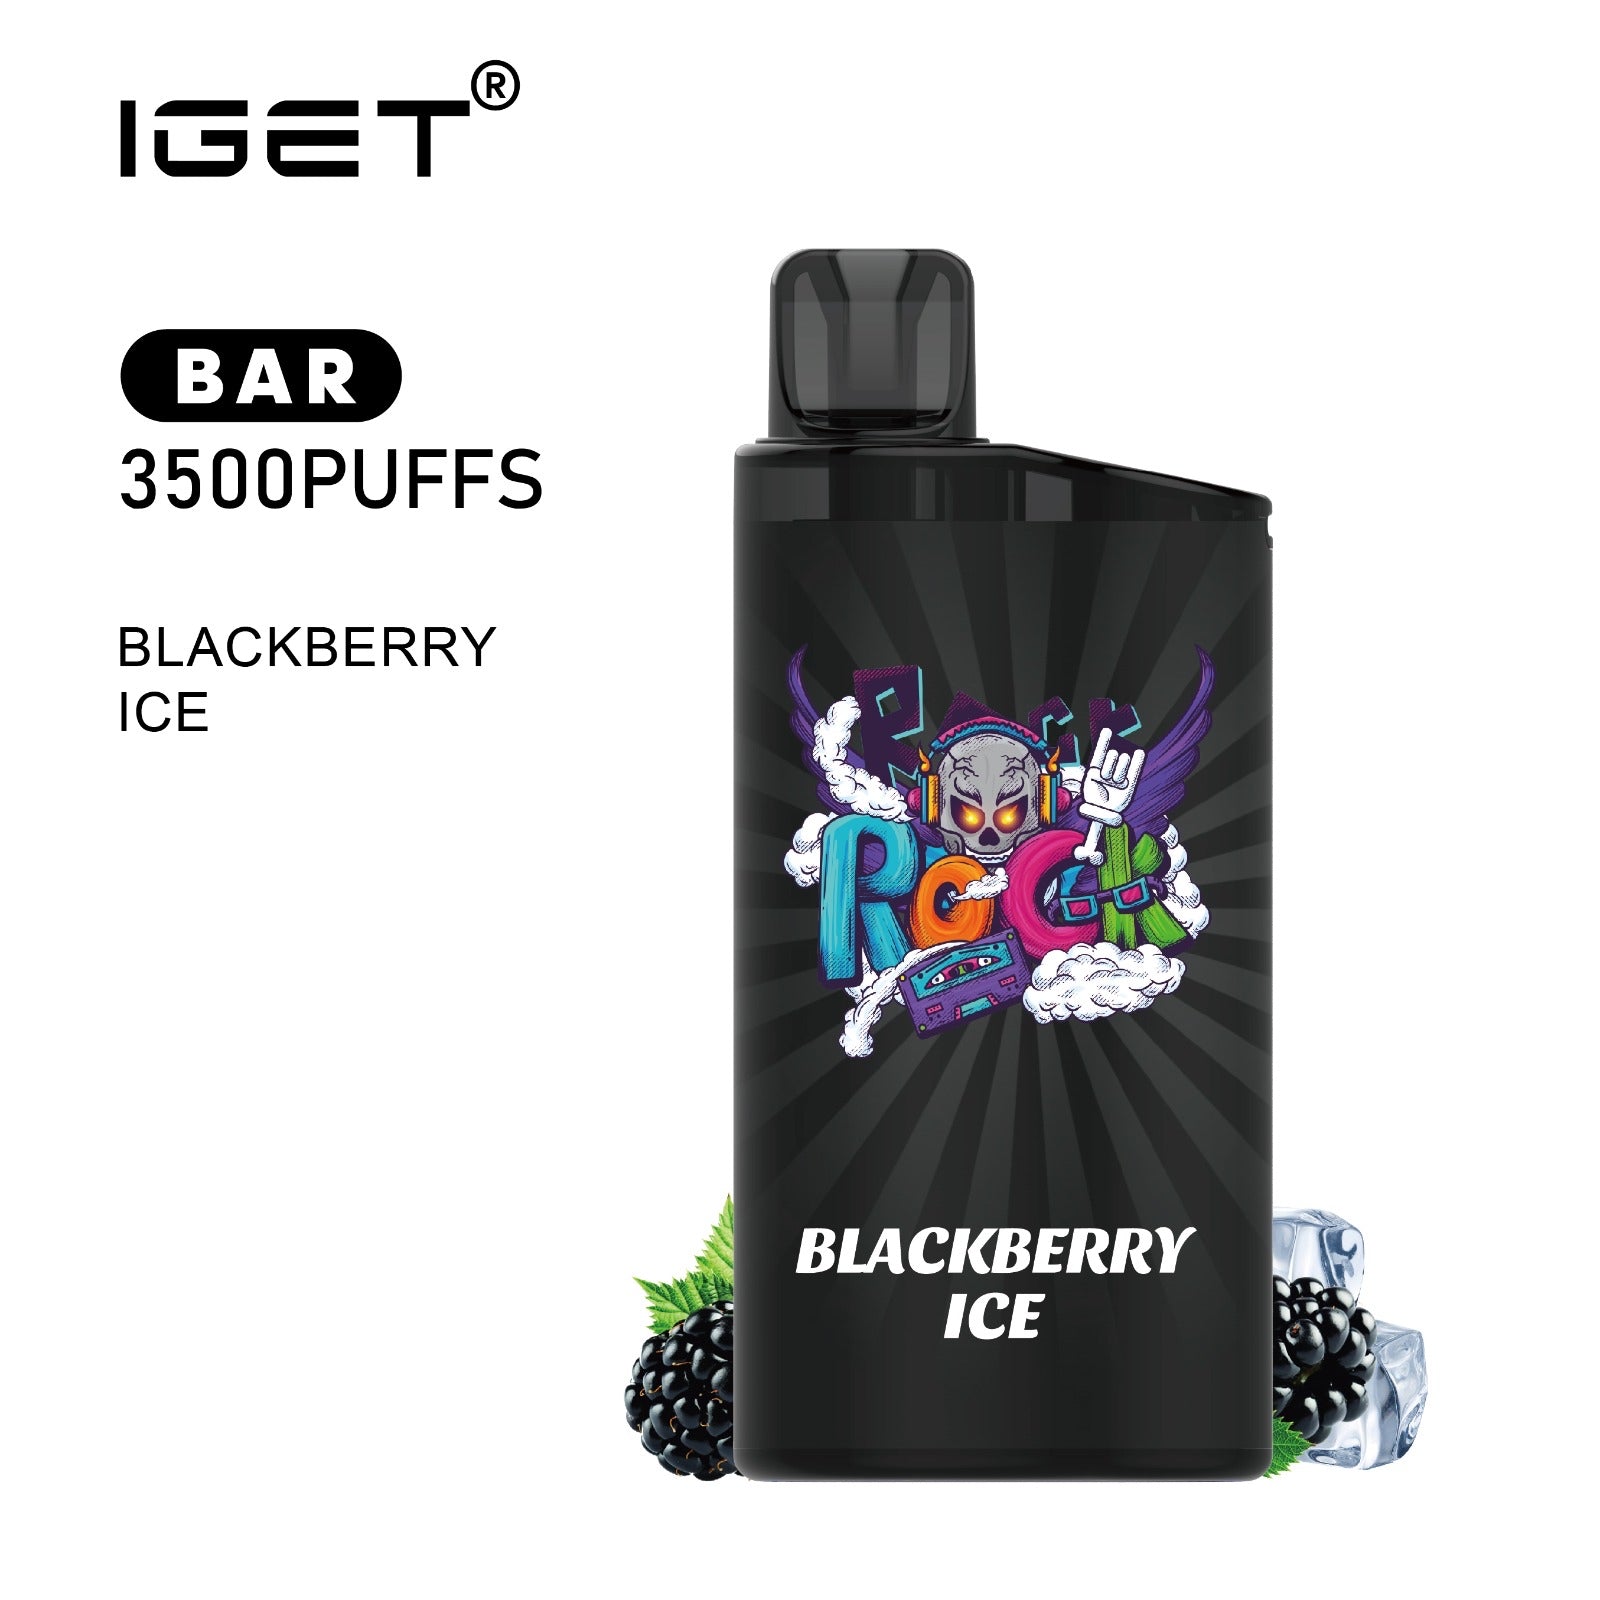 IGET BAR BLACKBERRY ICE 3500 PUFFS